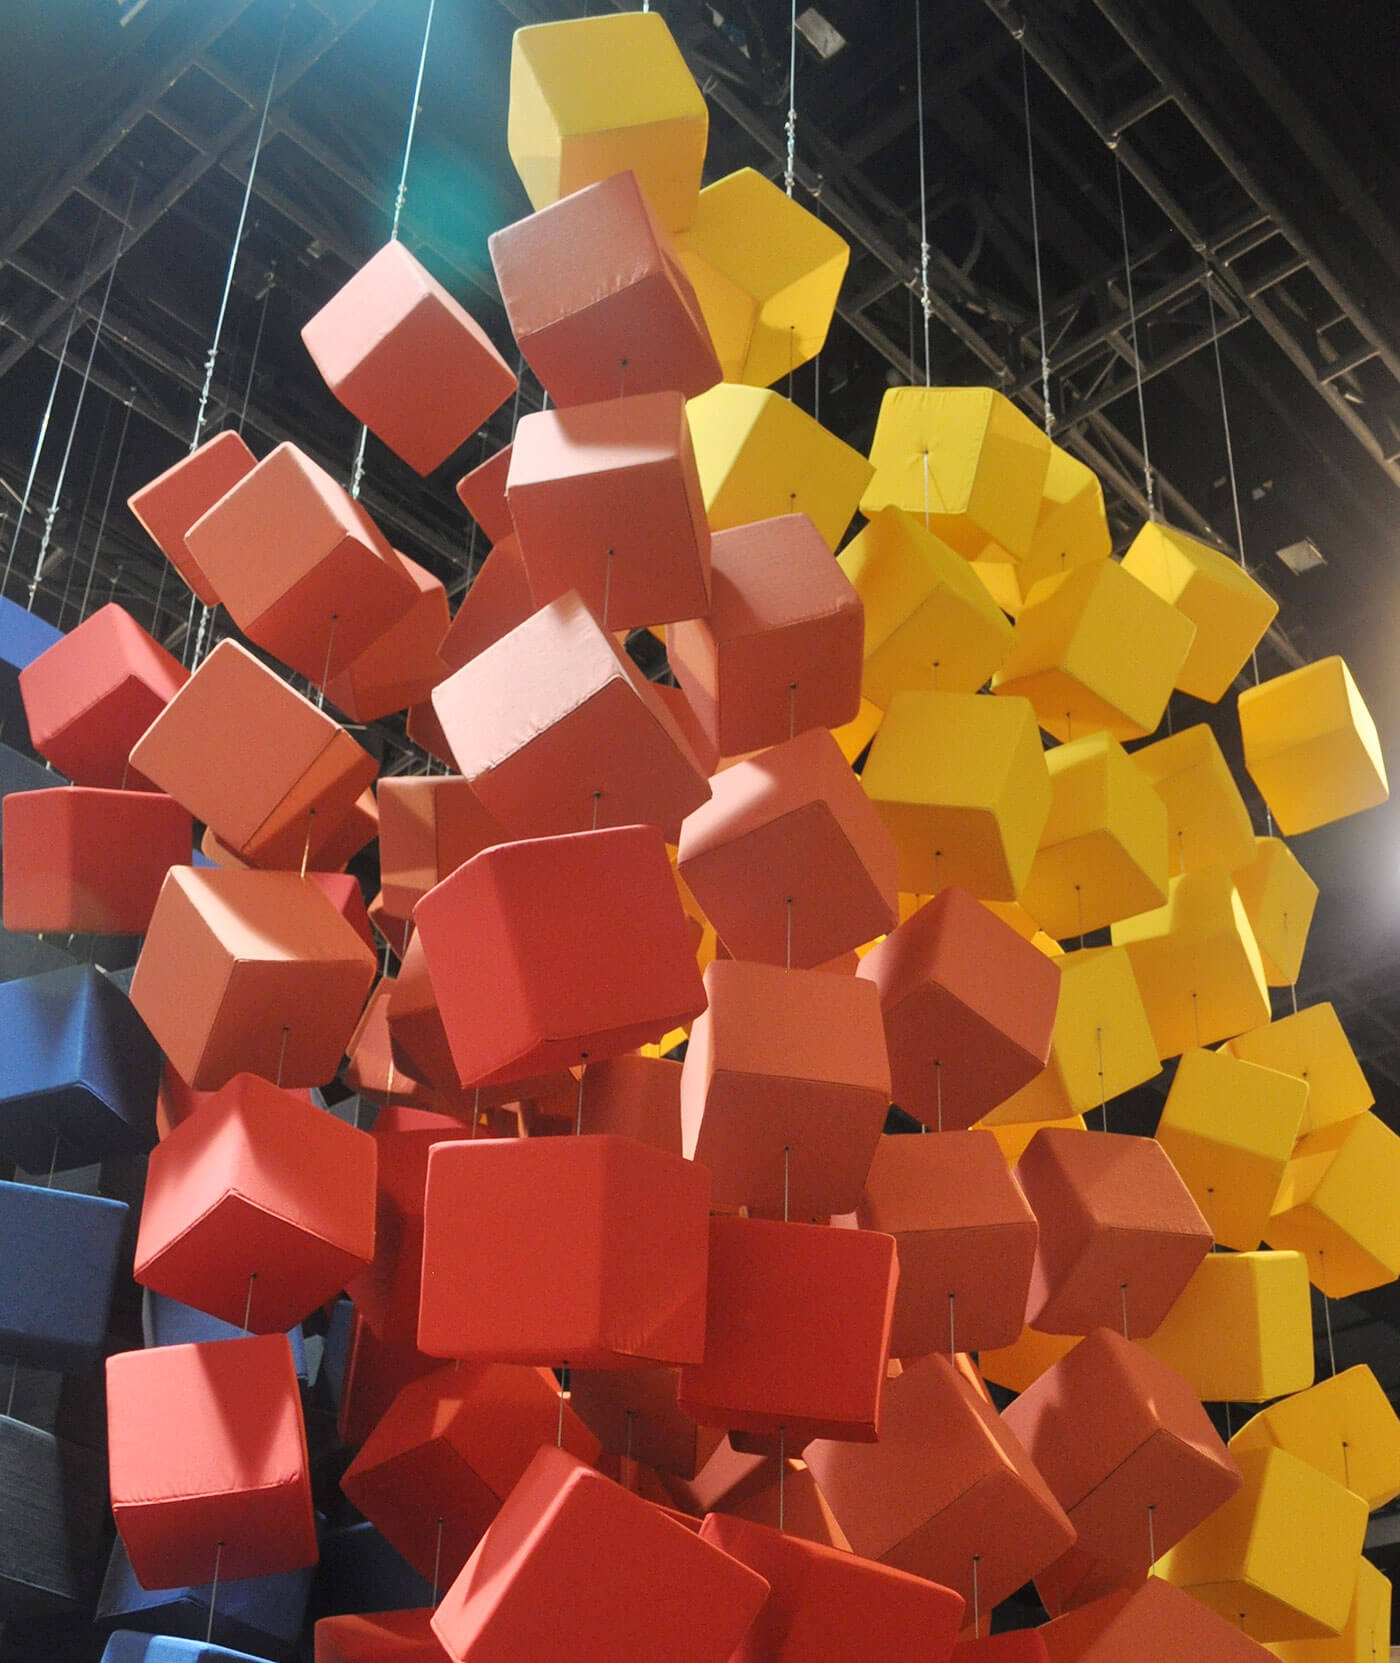 Sunbrella Spectrum состоит из ярких цветных тканей Sunbrella, подвешенных в воздухе на кубиках с обивкой.